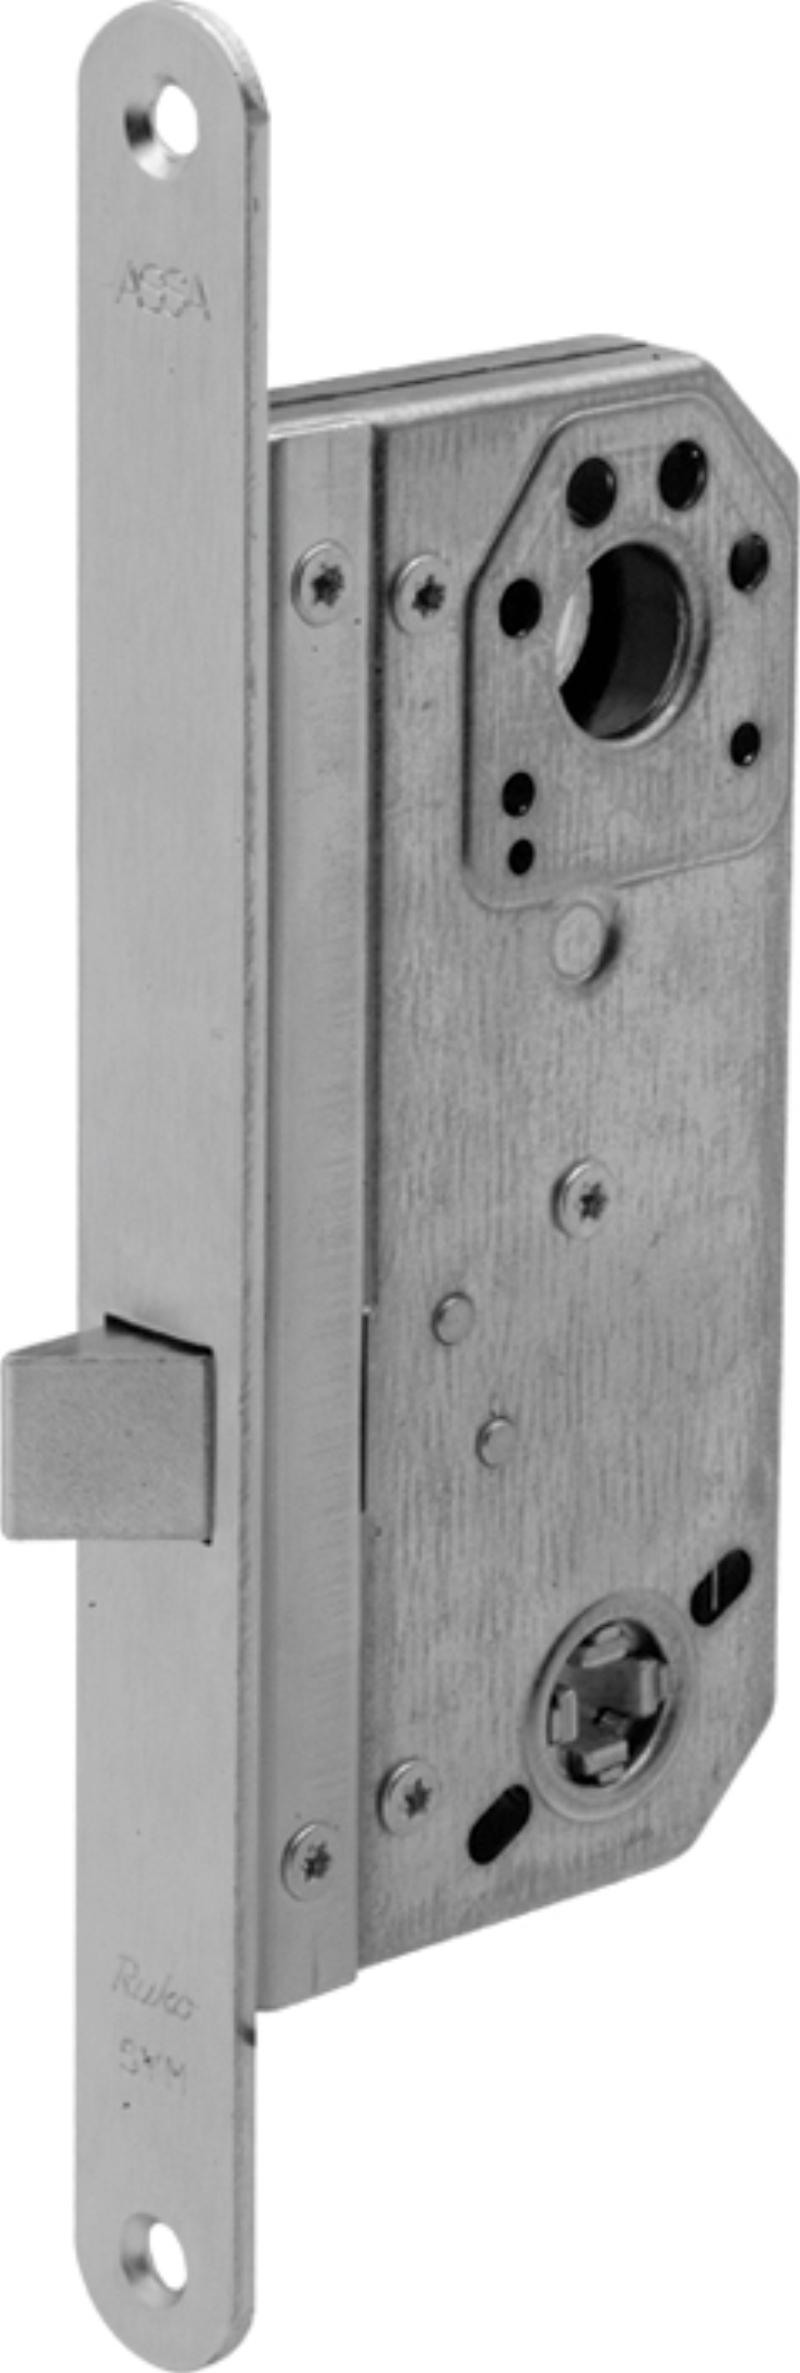 Assa låsbox 1498